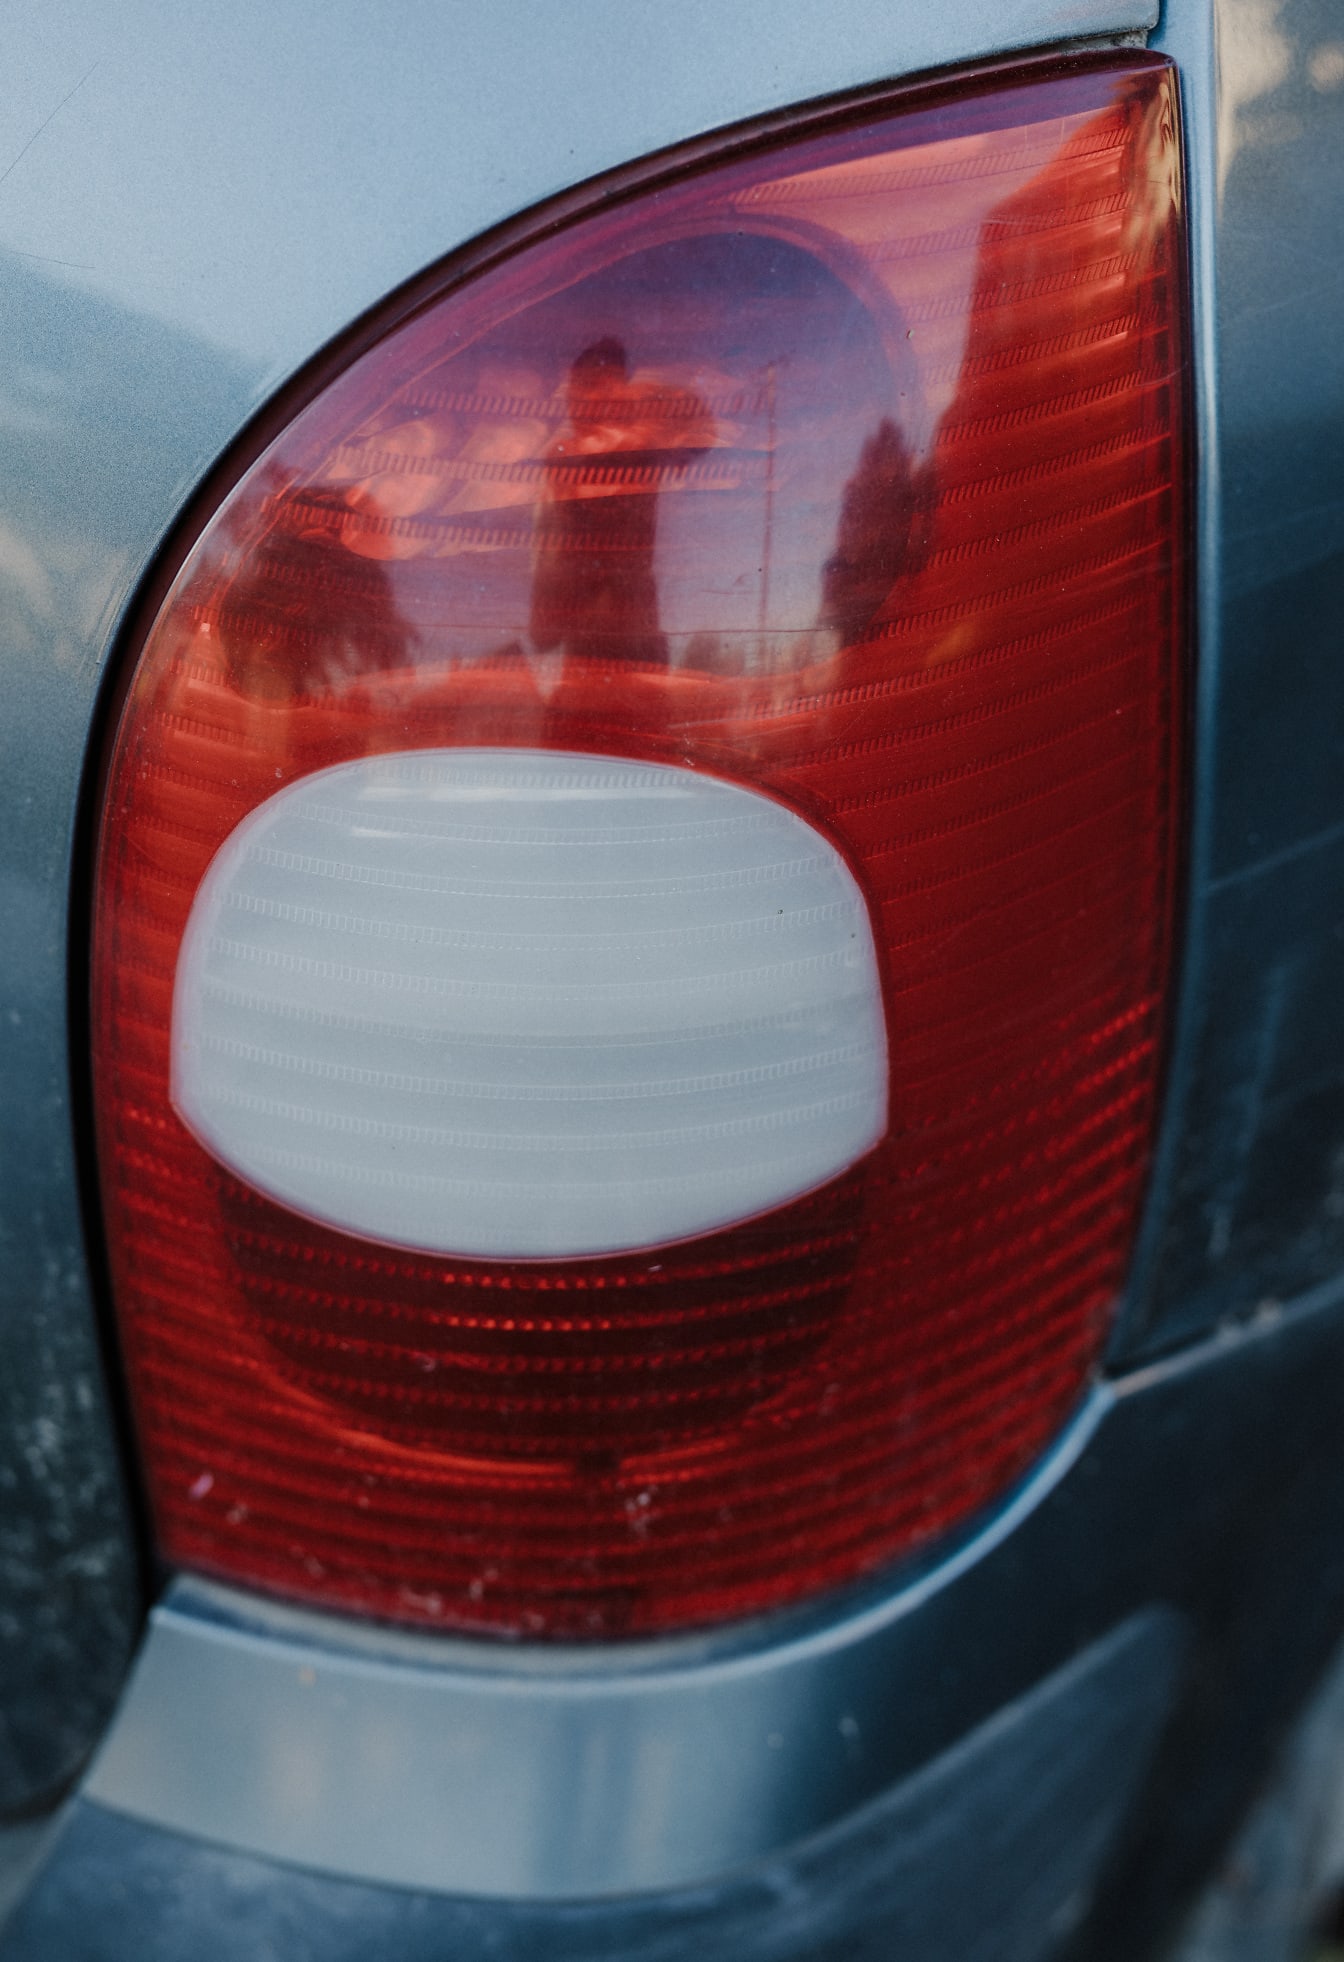 Détail du feu arrière sur le véhicule en plastique blanc et rouge foncé